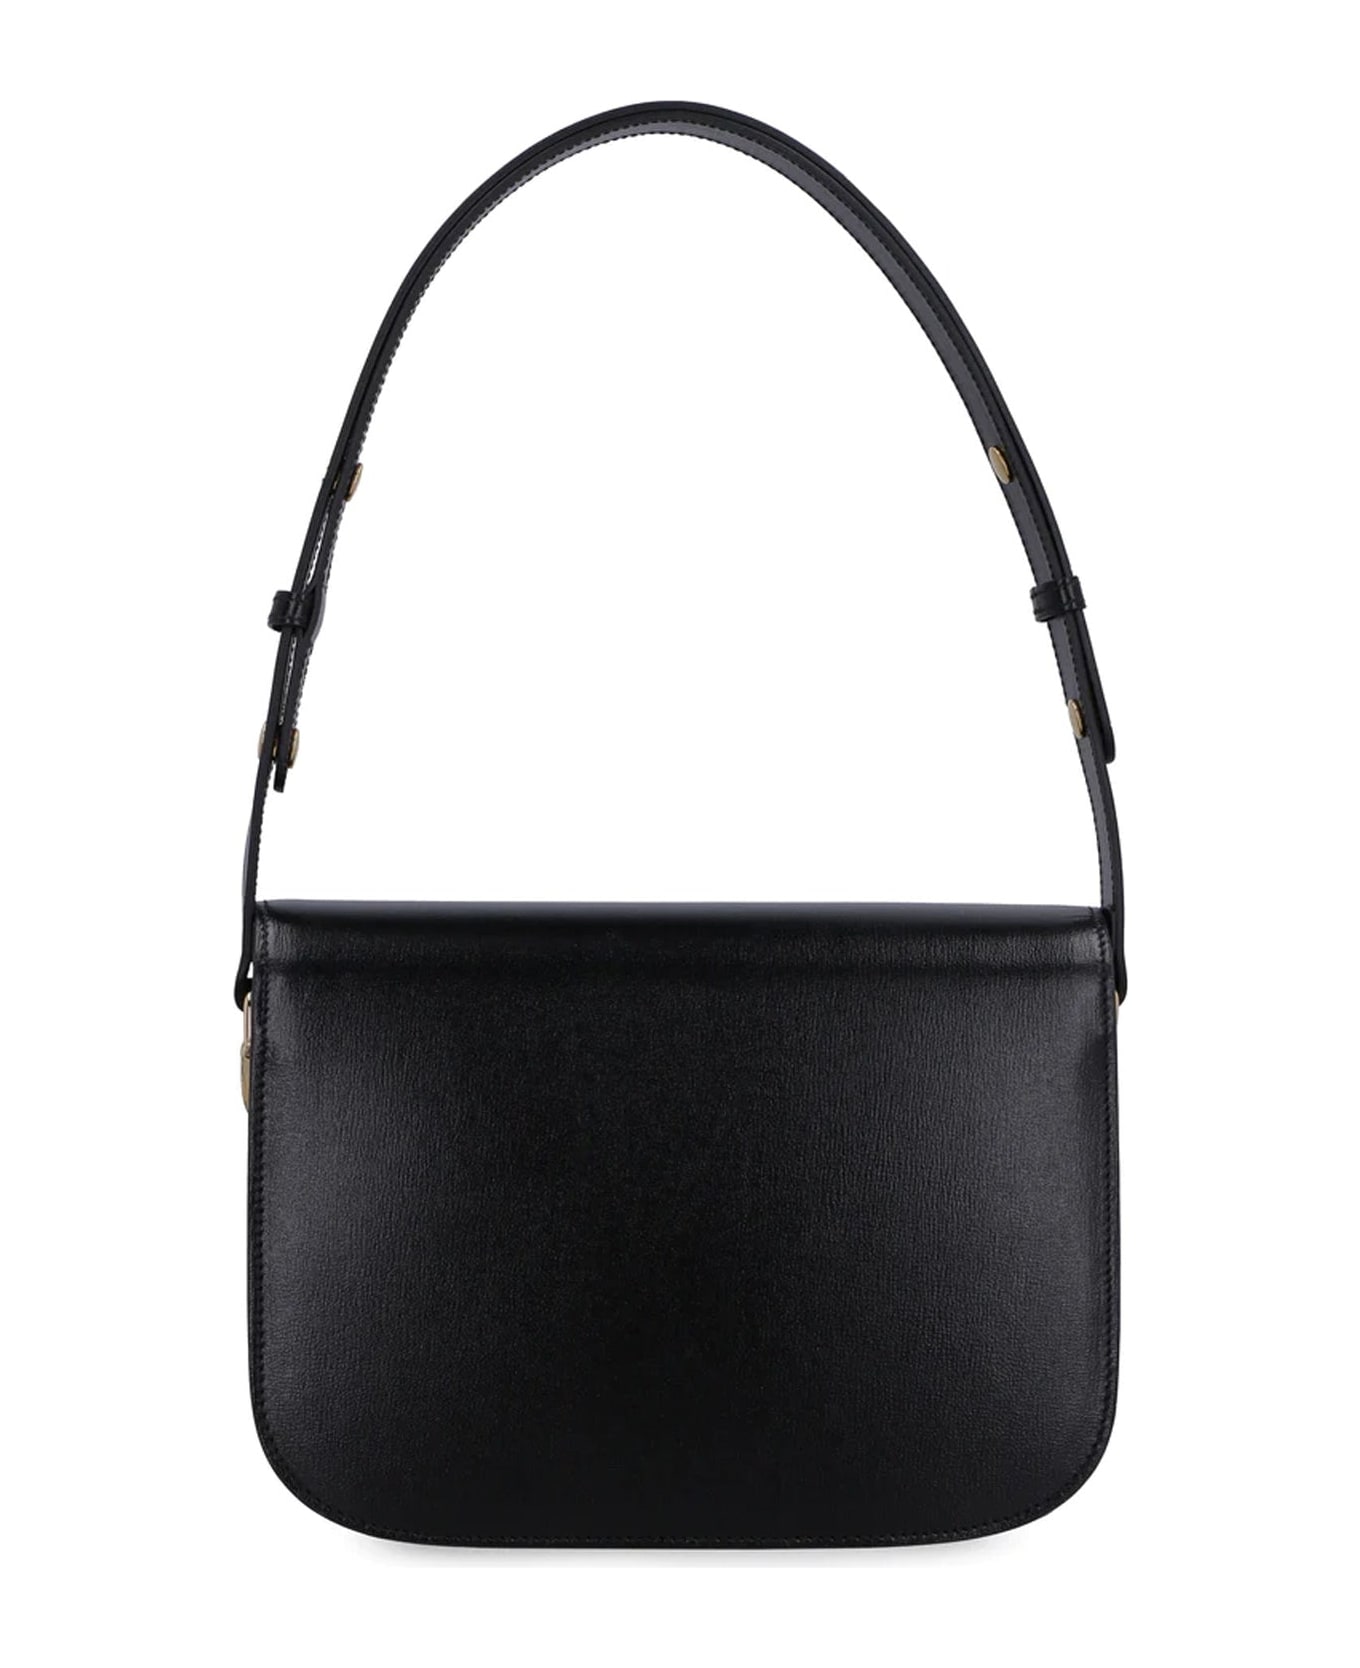 Gucci Horsebit 1955 Shoulder Bag - Black ショルダーバッグ